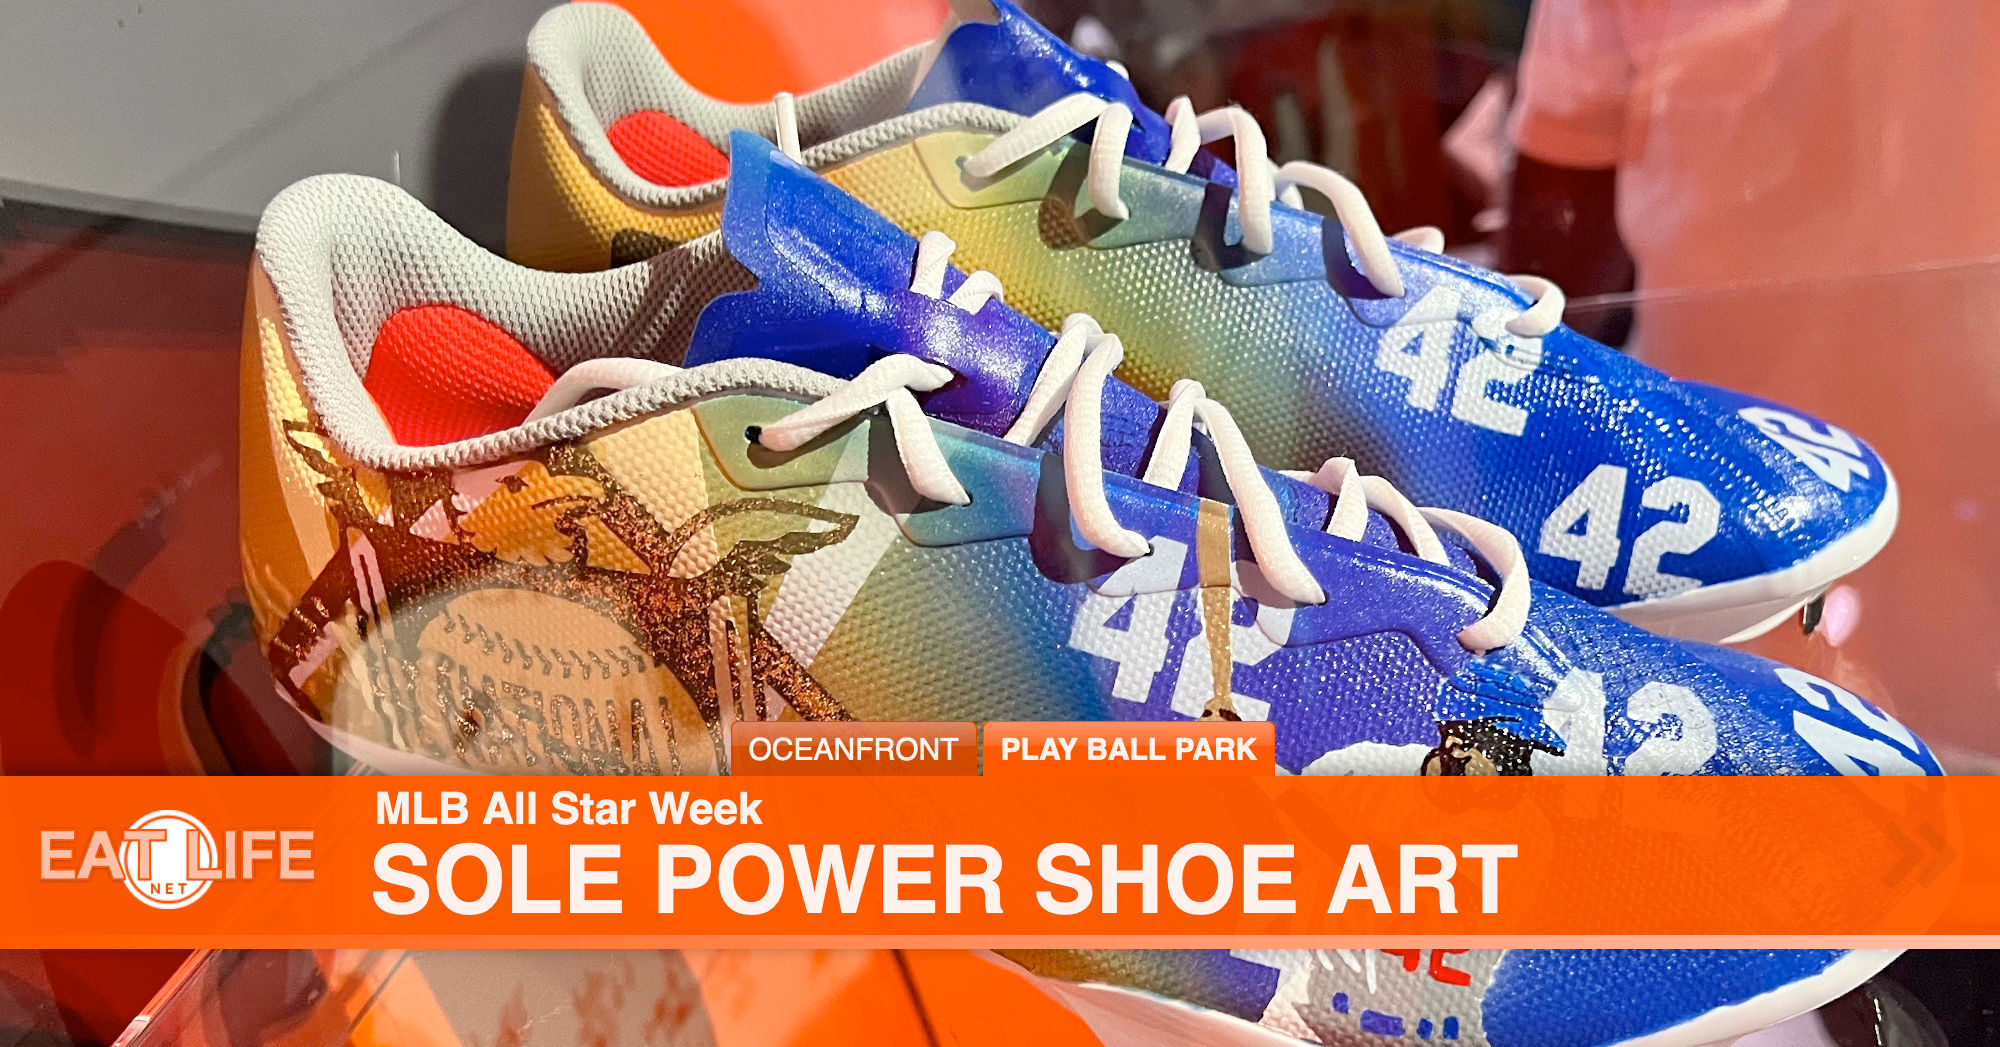 Sole Power Shoe Art